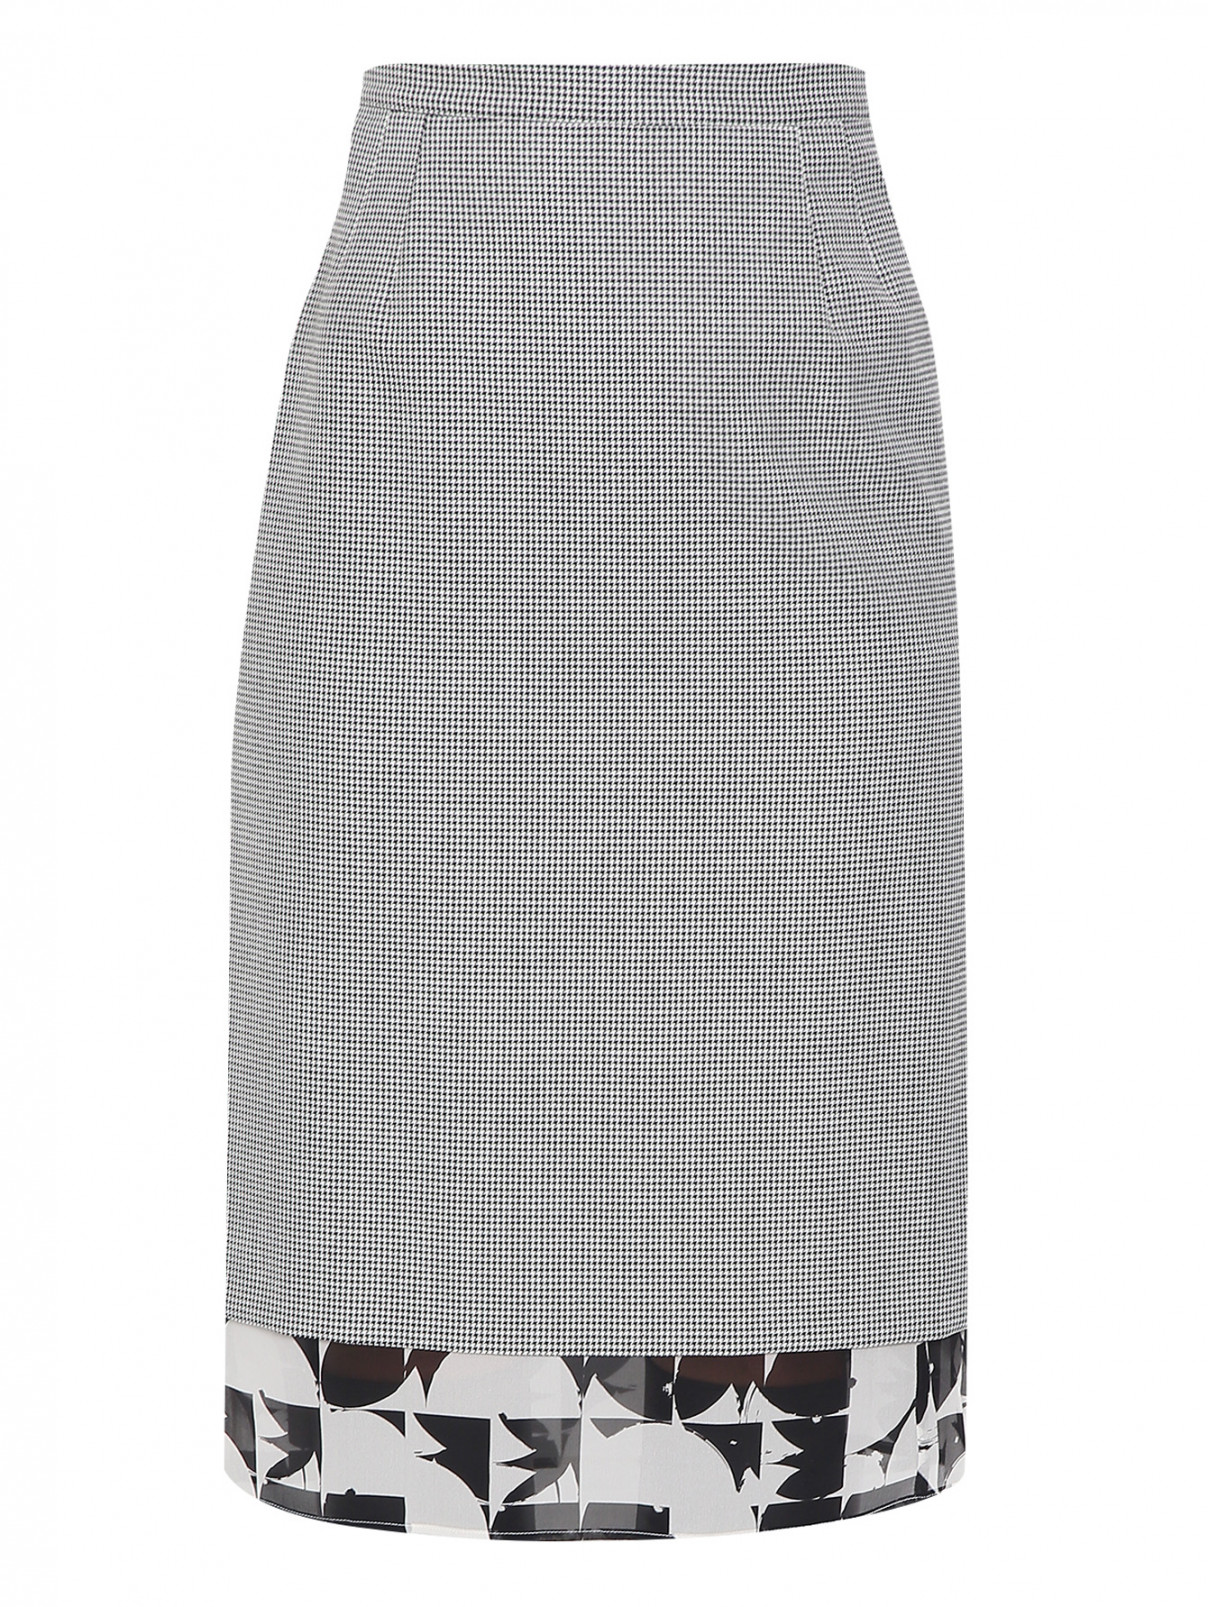 Комбинированная юбка с узором Marina Rinaldi  –  Общий вид  – Цвет:  Узор